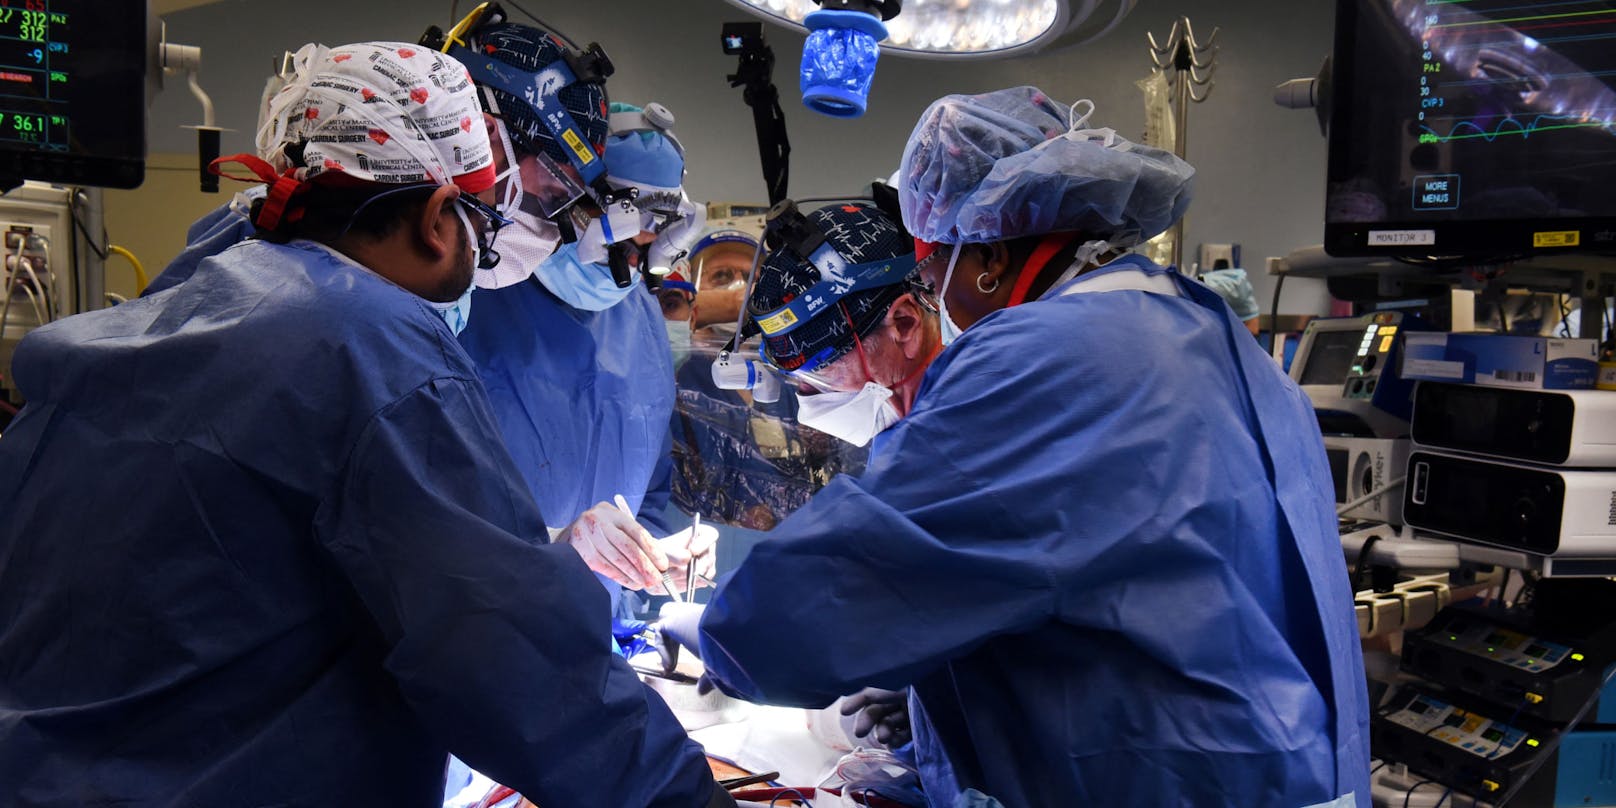 In Boston verweigerte ein Spital einer ungeimpften Person die Organtransplantation. (Symbolbild)